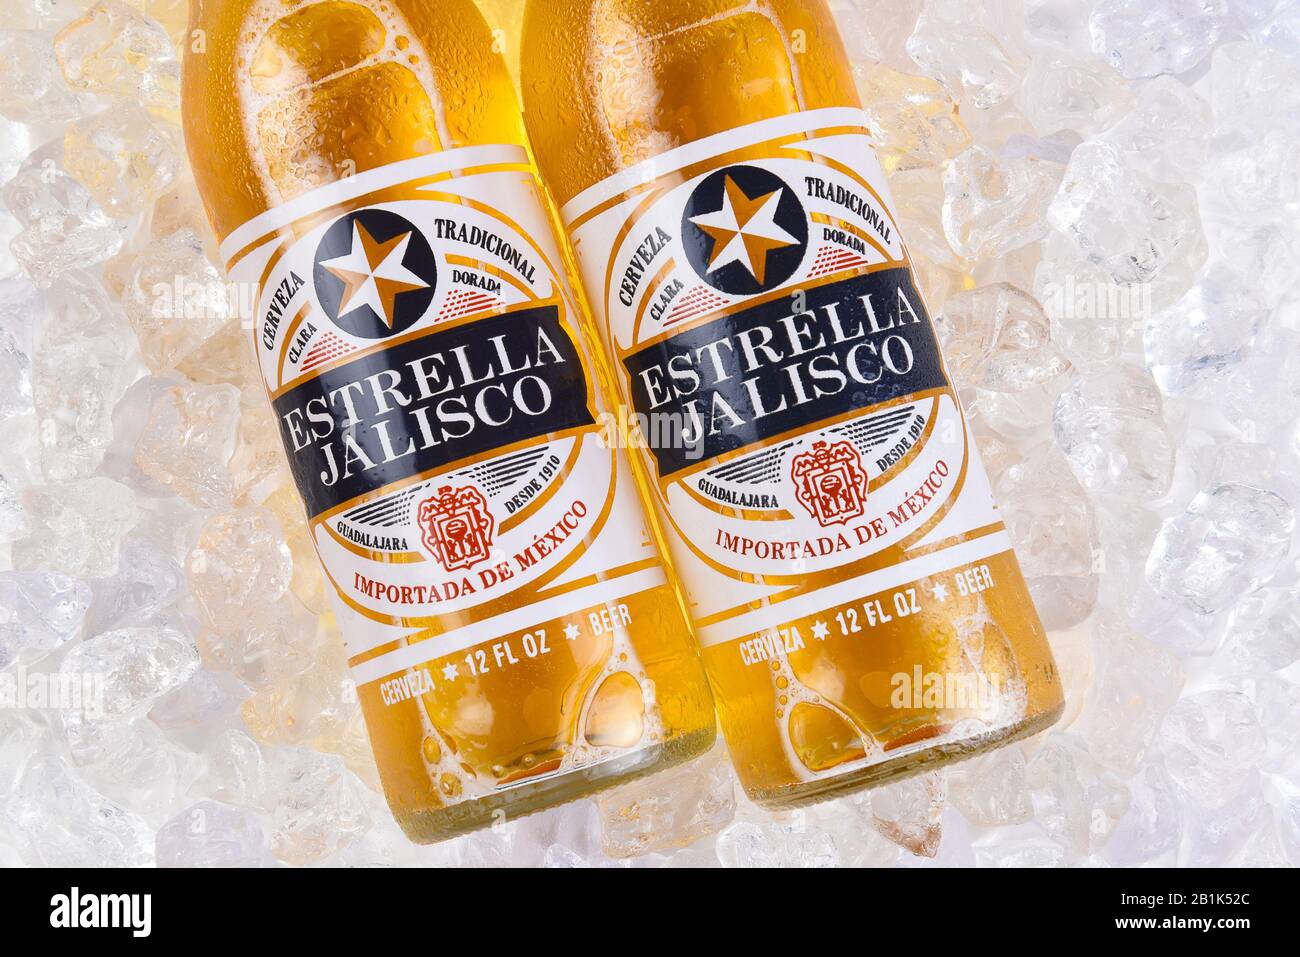 Irvine, KALIFORNIEN - 21. MÄRZ 2018: Zwei Flaschen Estrella Jalisco Bier in Eis-Nahaufnahme. Estrella Jalisco ist ein von Gr gebrautes Bier im amerikanischen Stil Stockfoto